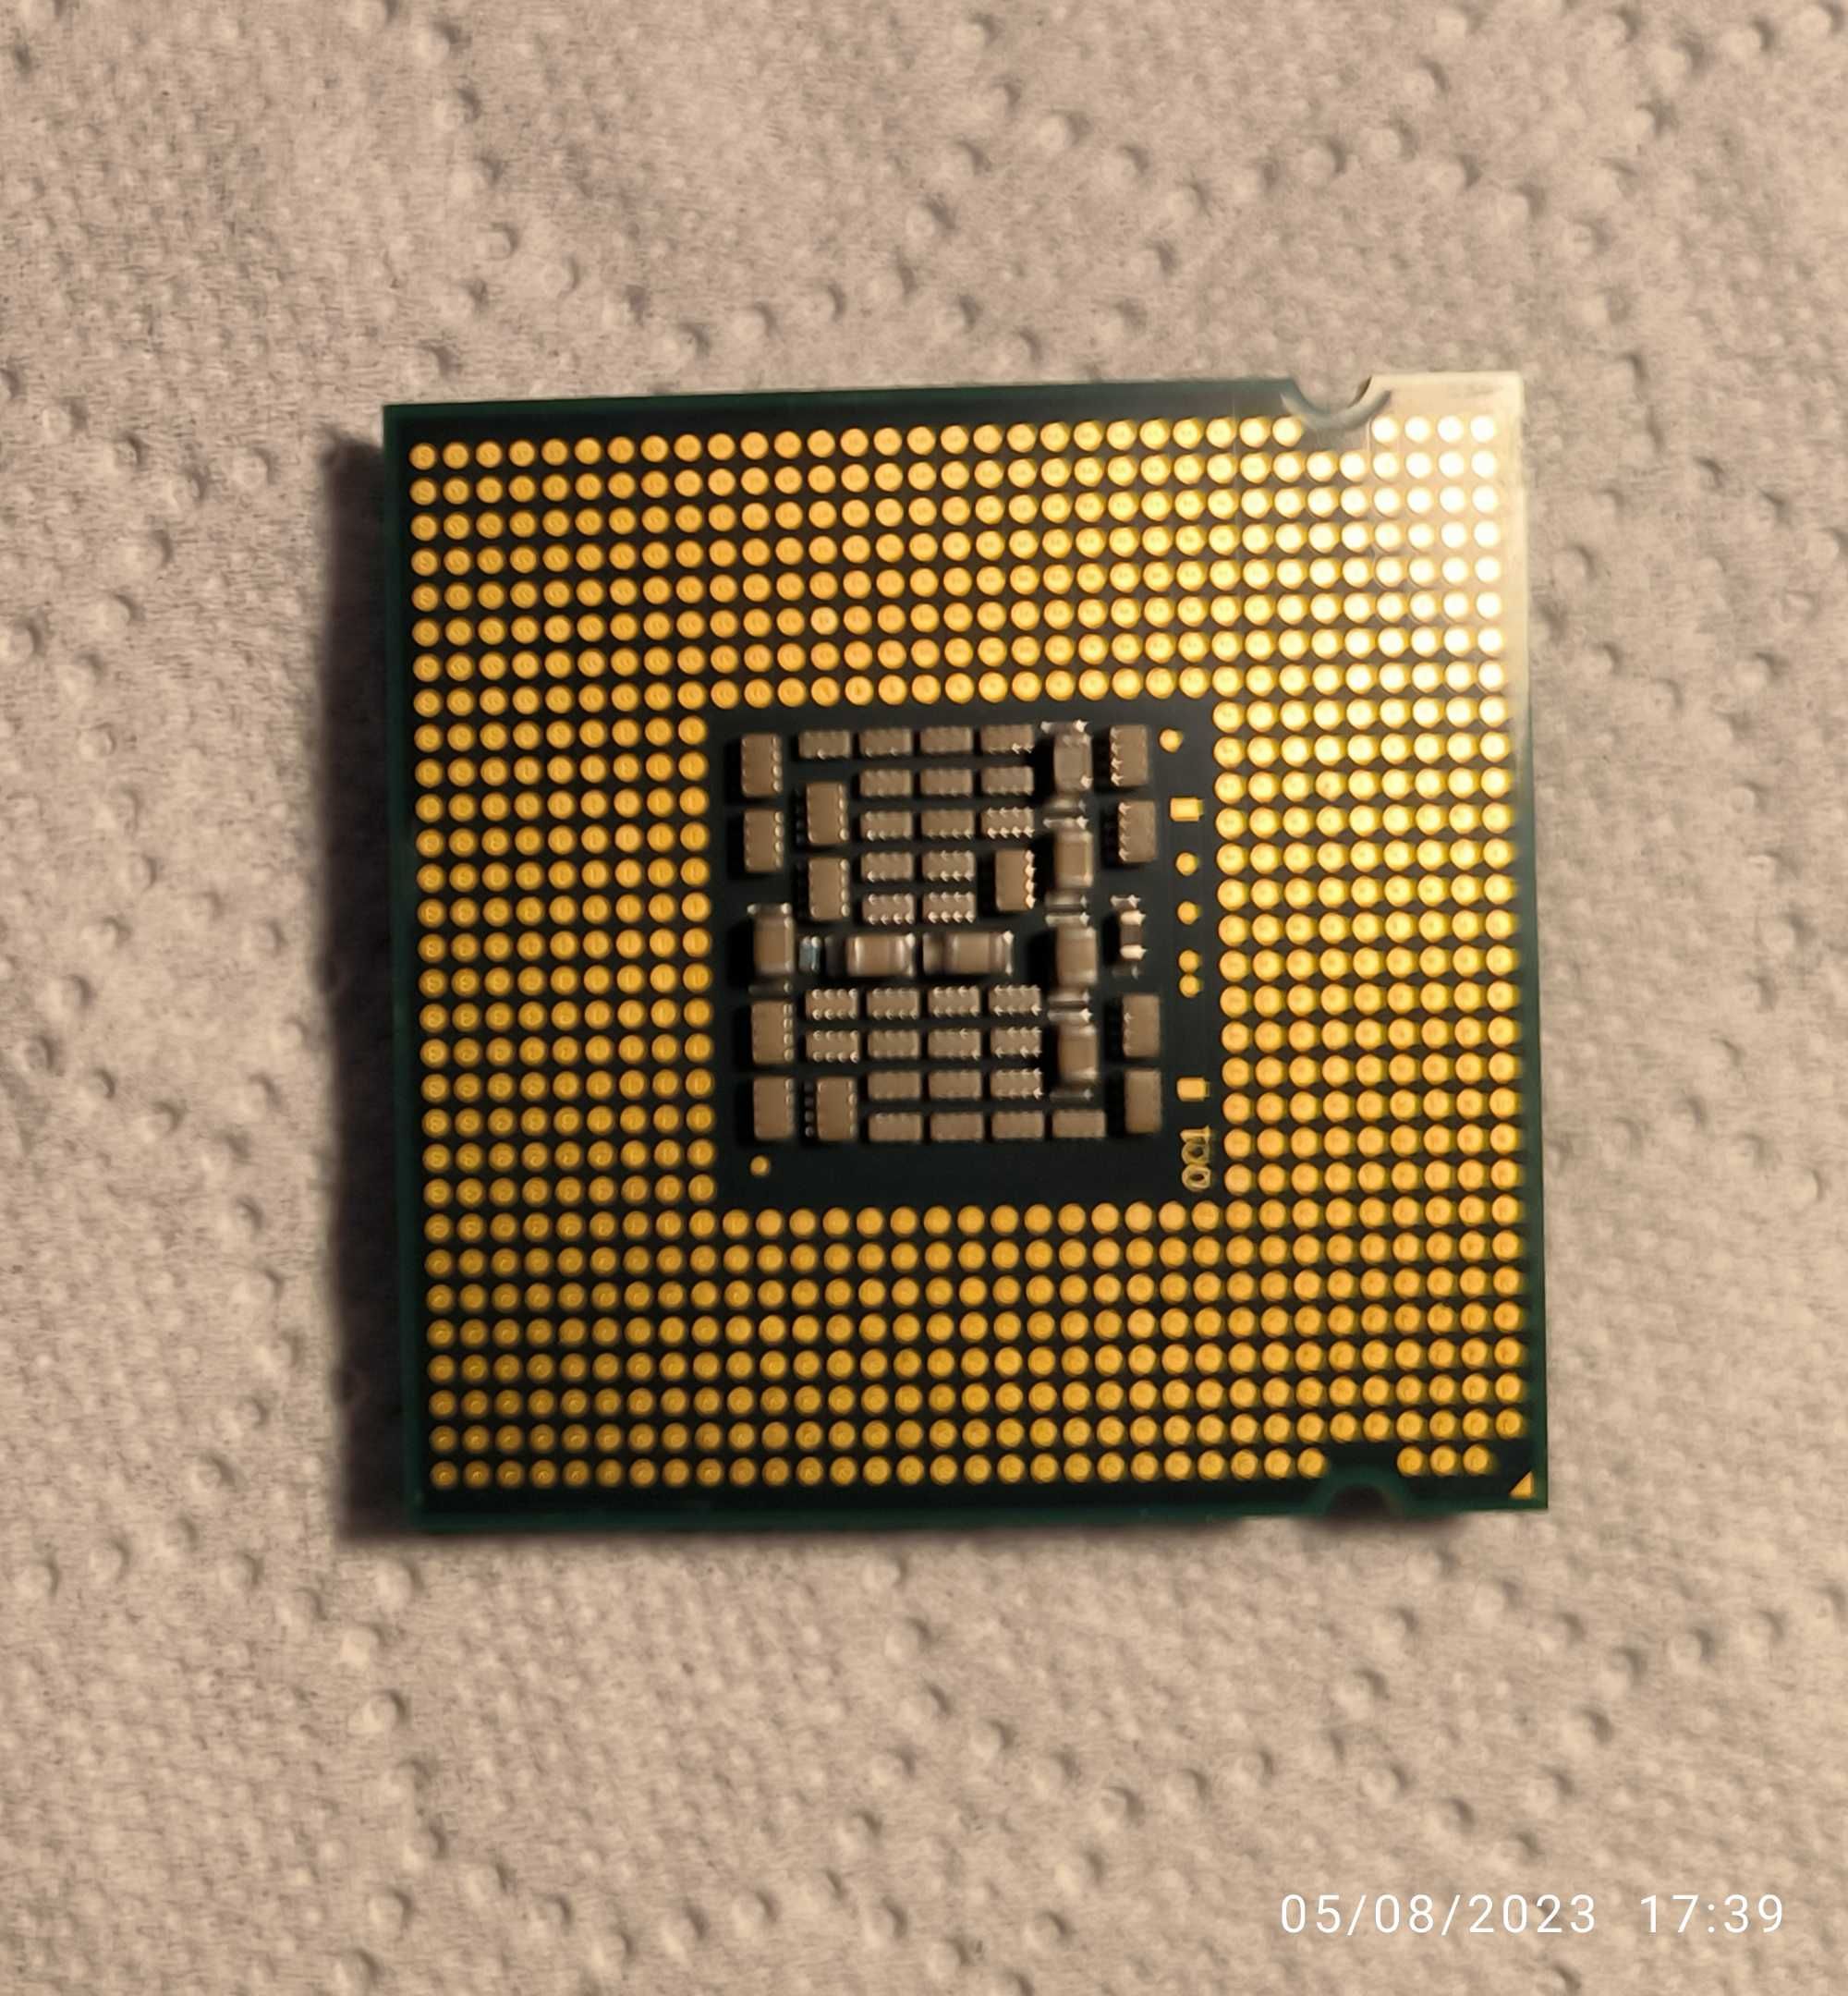 Intel Pentium D 925 - LGA775